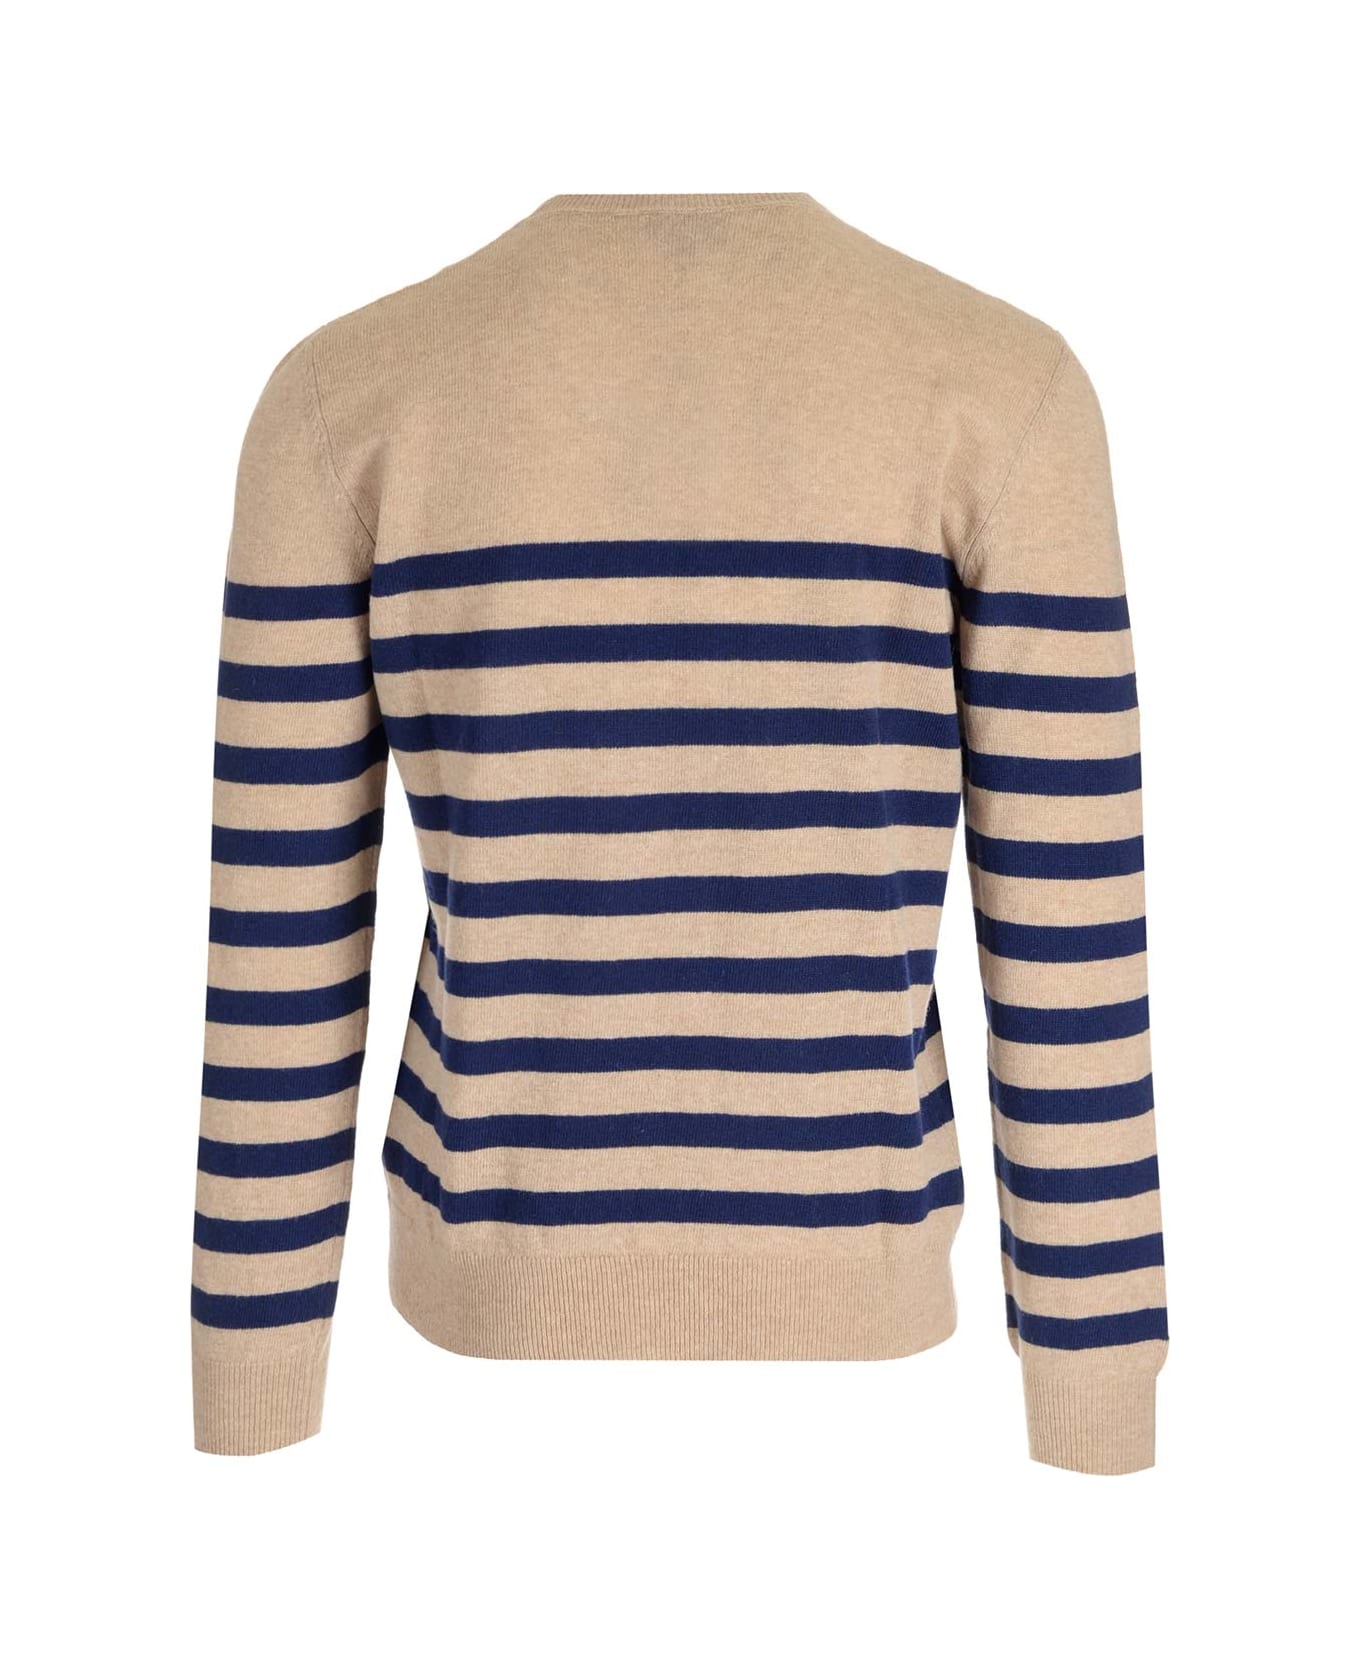 A.P.C. 'ismael' Striped Sweater - Beige/Dark Navy